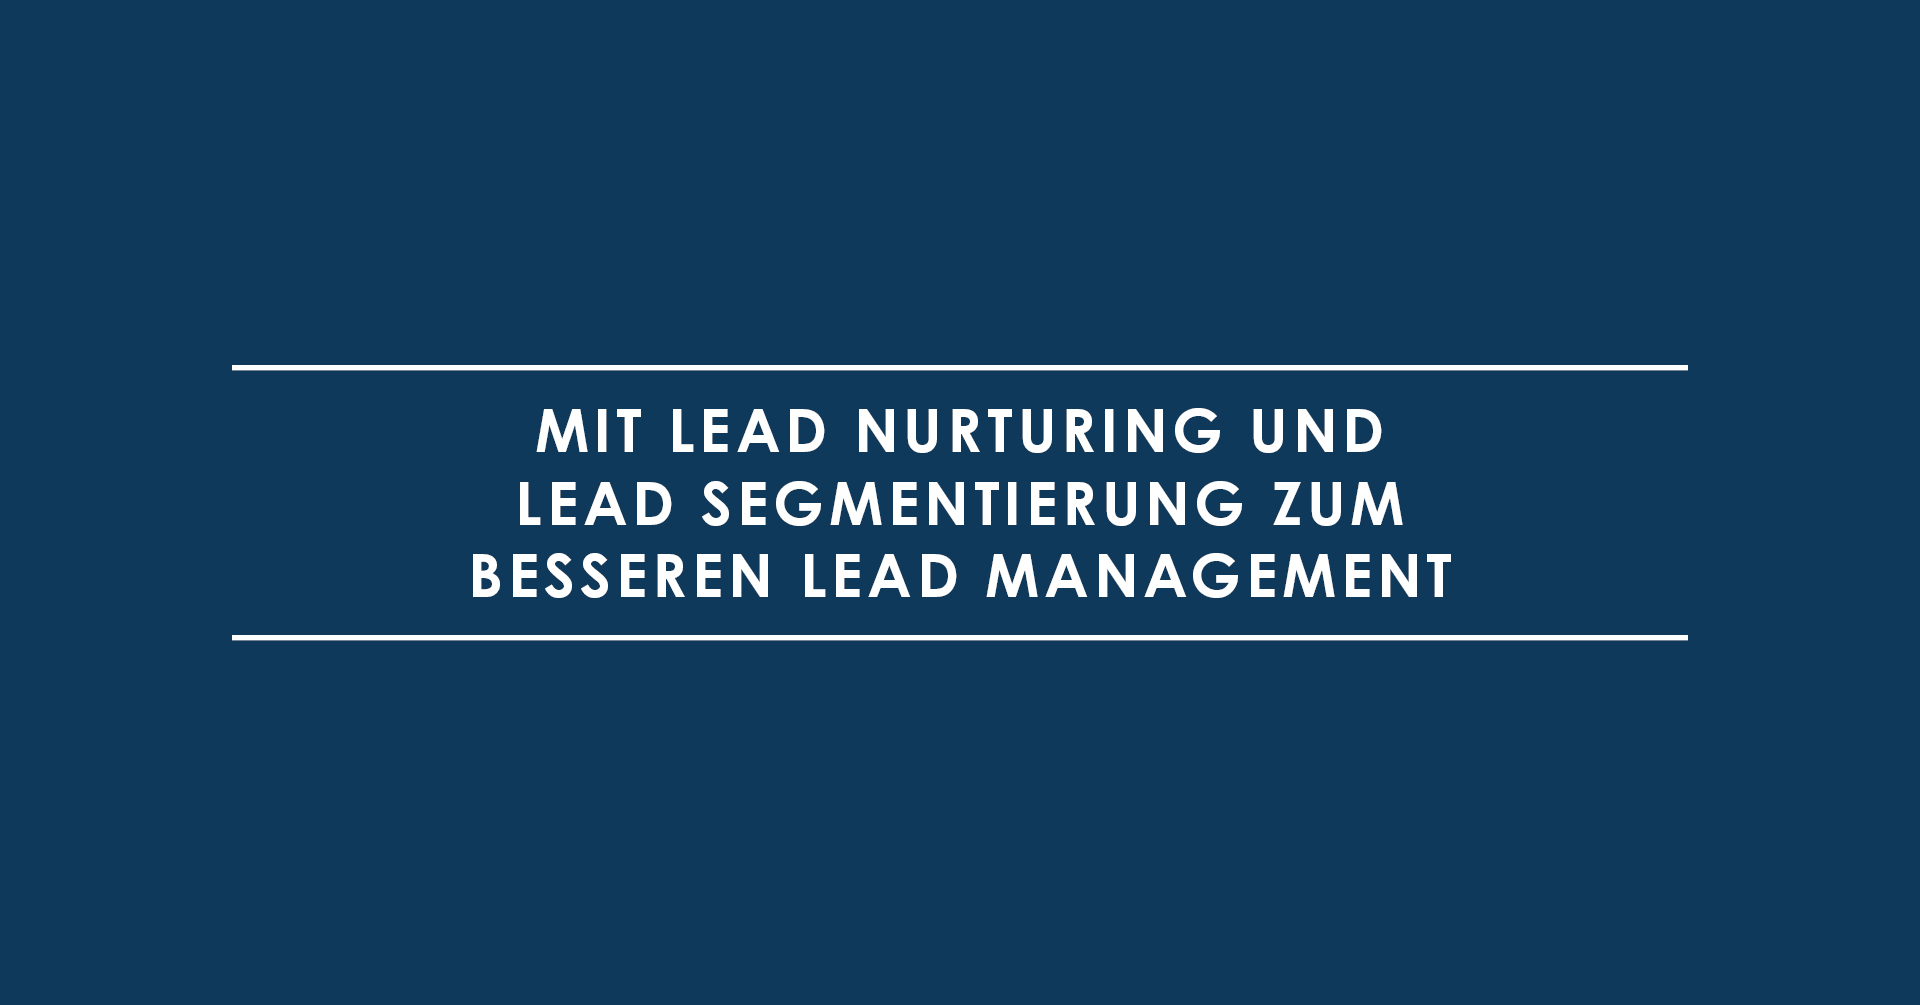 Mit Lead Nurturing und Lead Segmentierung zum besseren Lead Management